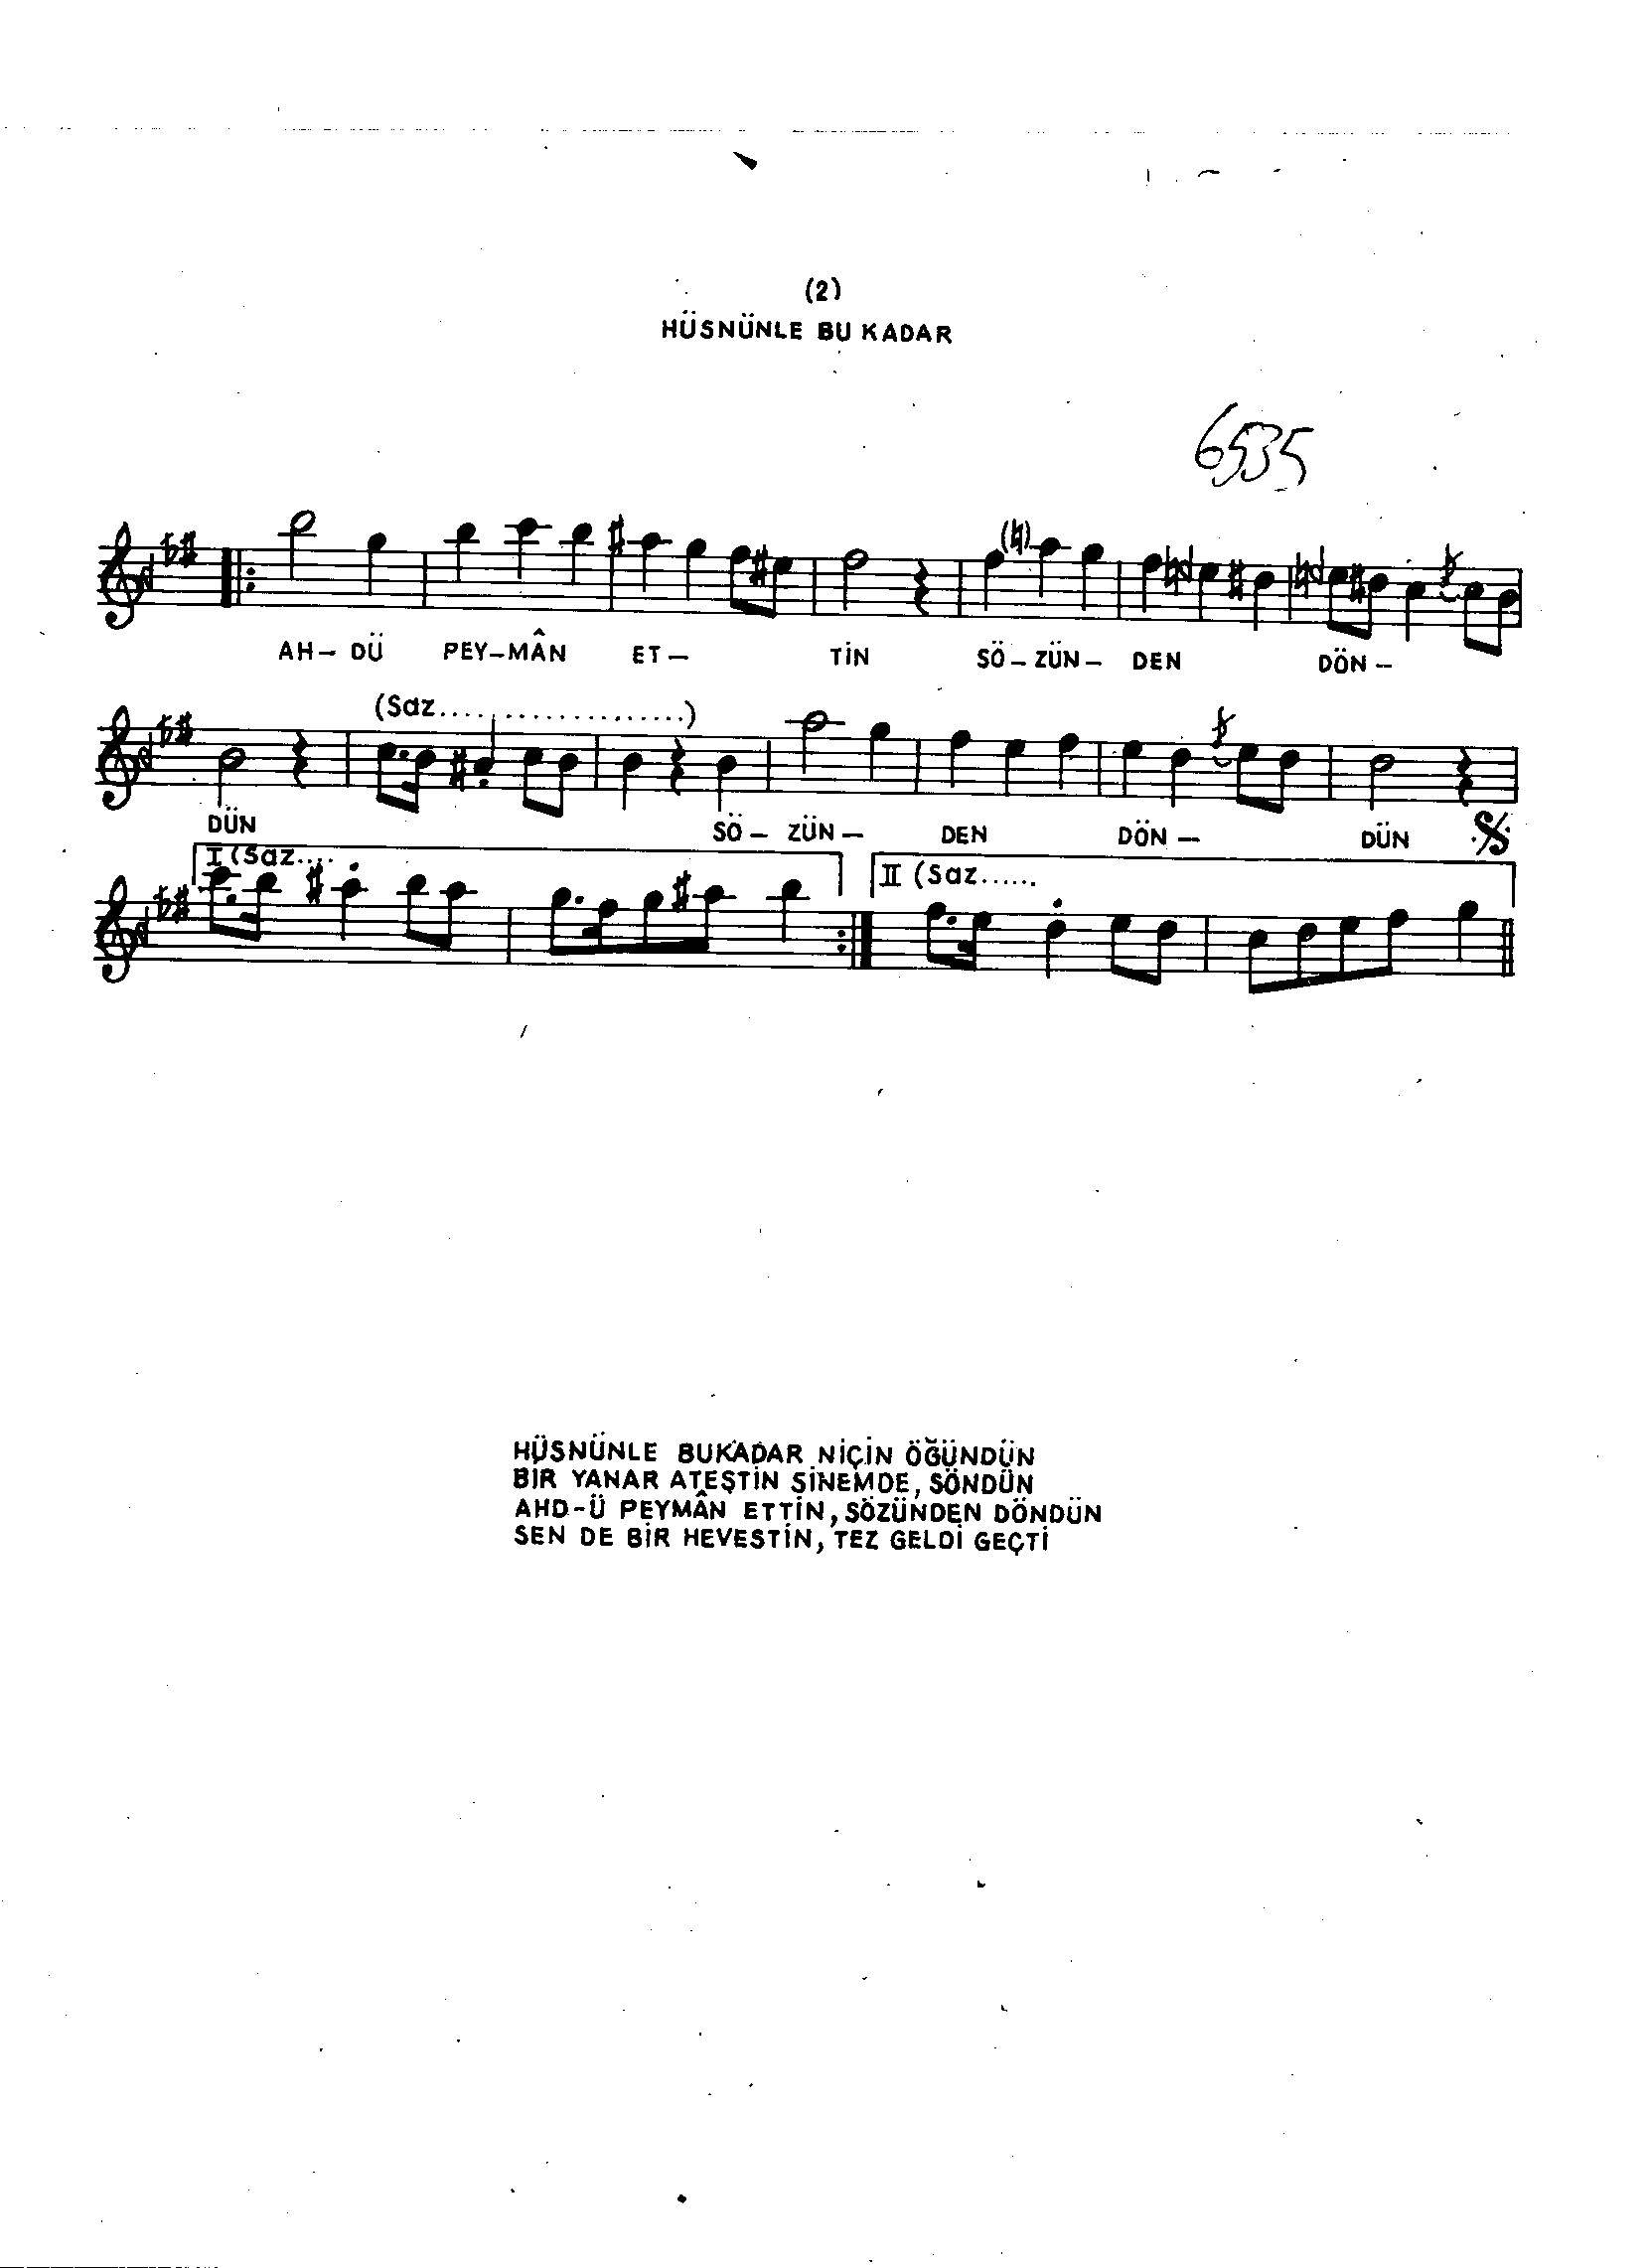 Hüzzâm - Şarkı - Akın Özkan - Sayfa 2